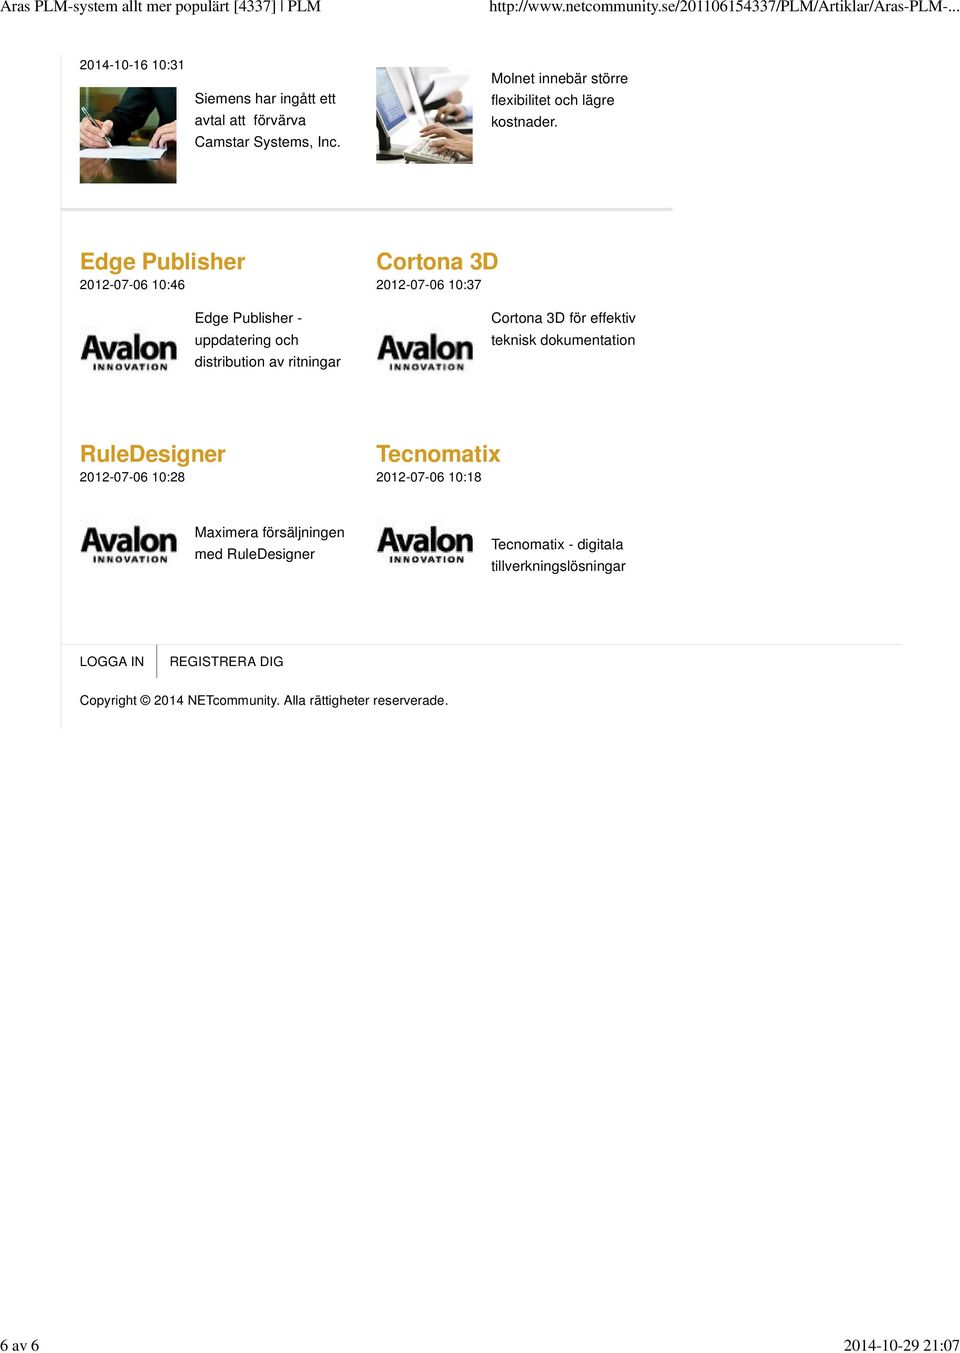 Edge Publisher 2012-07-06 10:46 Edge Publisher - uppdatering och distribution av ritningar Cortona 3D 2012-07-06 10:37 Cortona 3D för